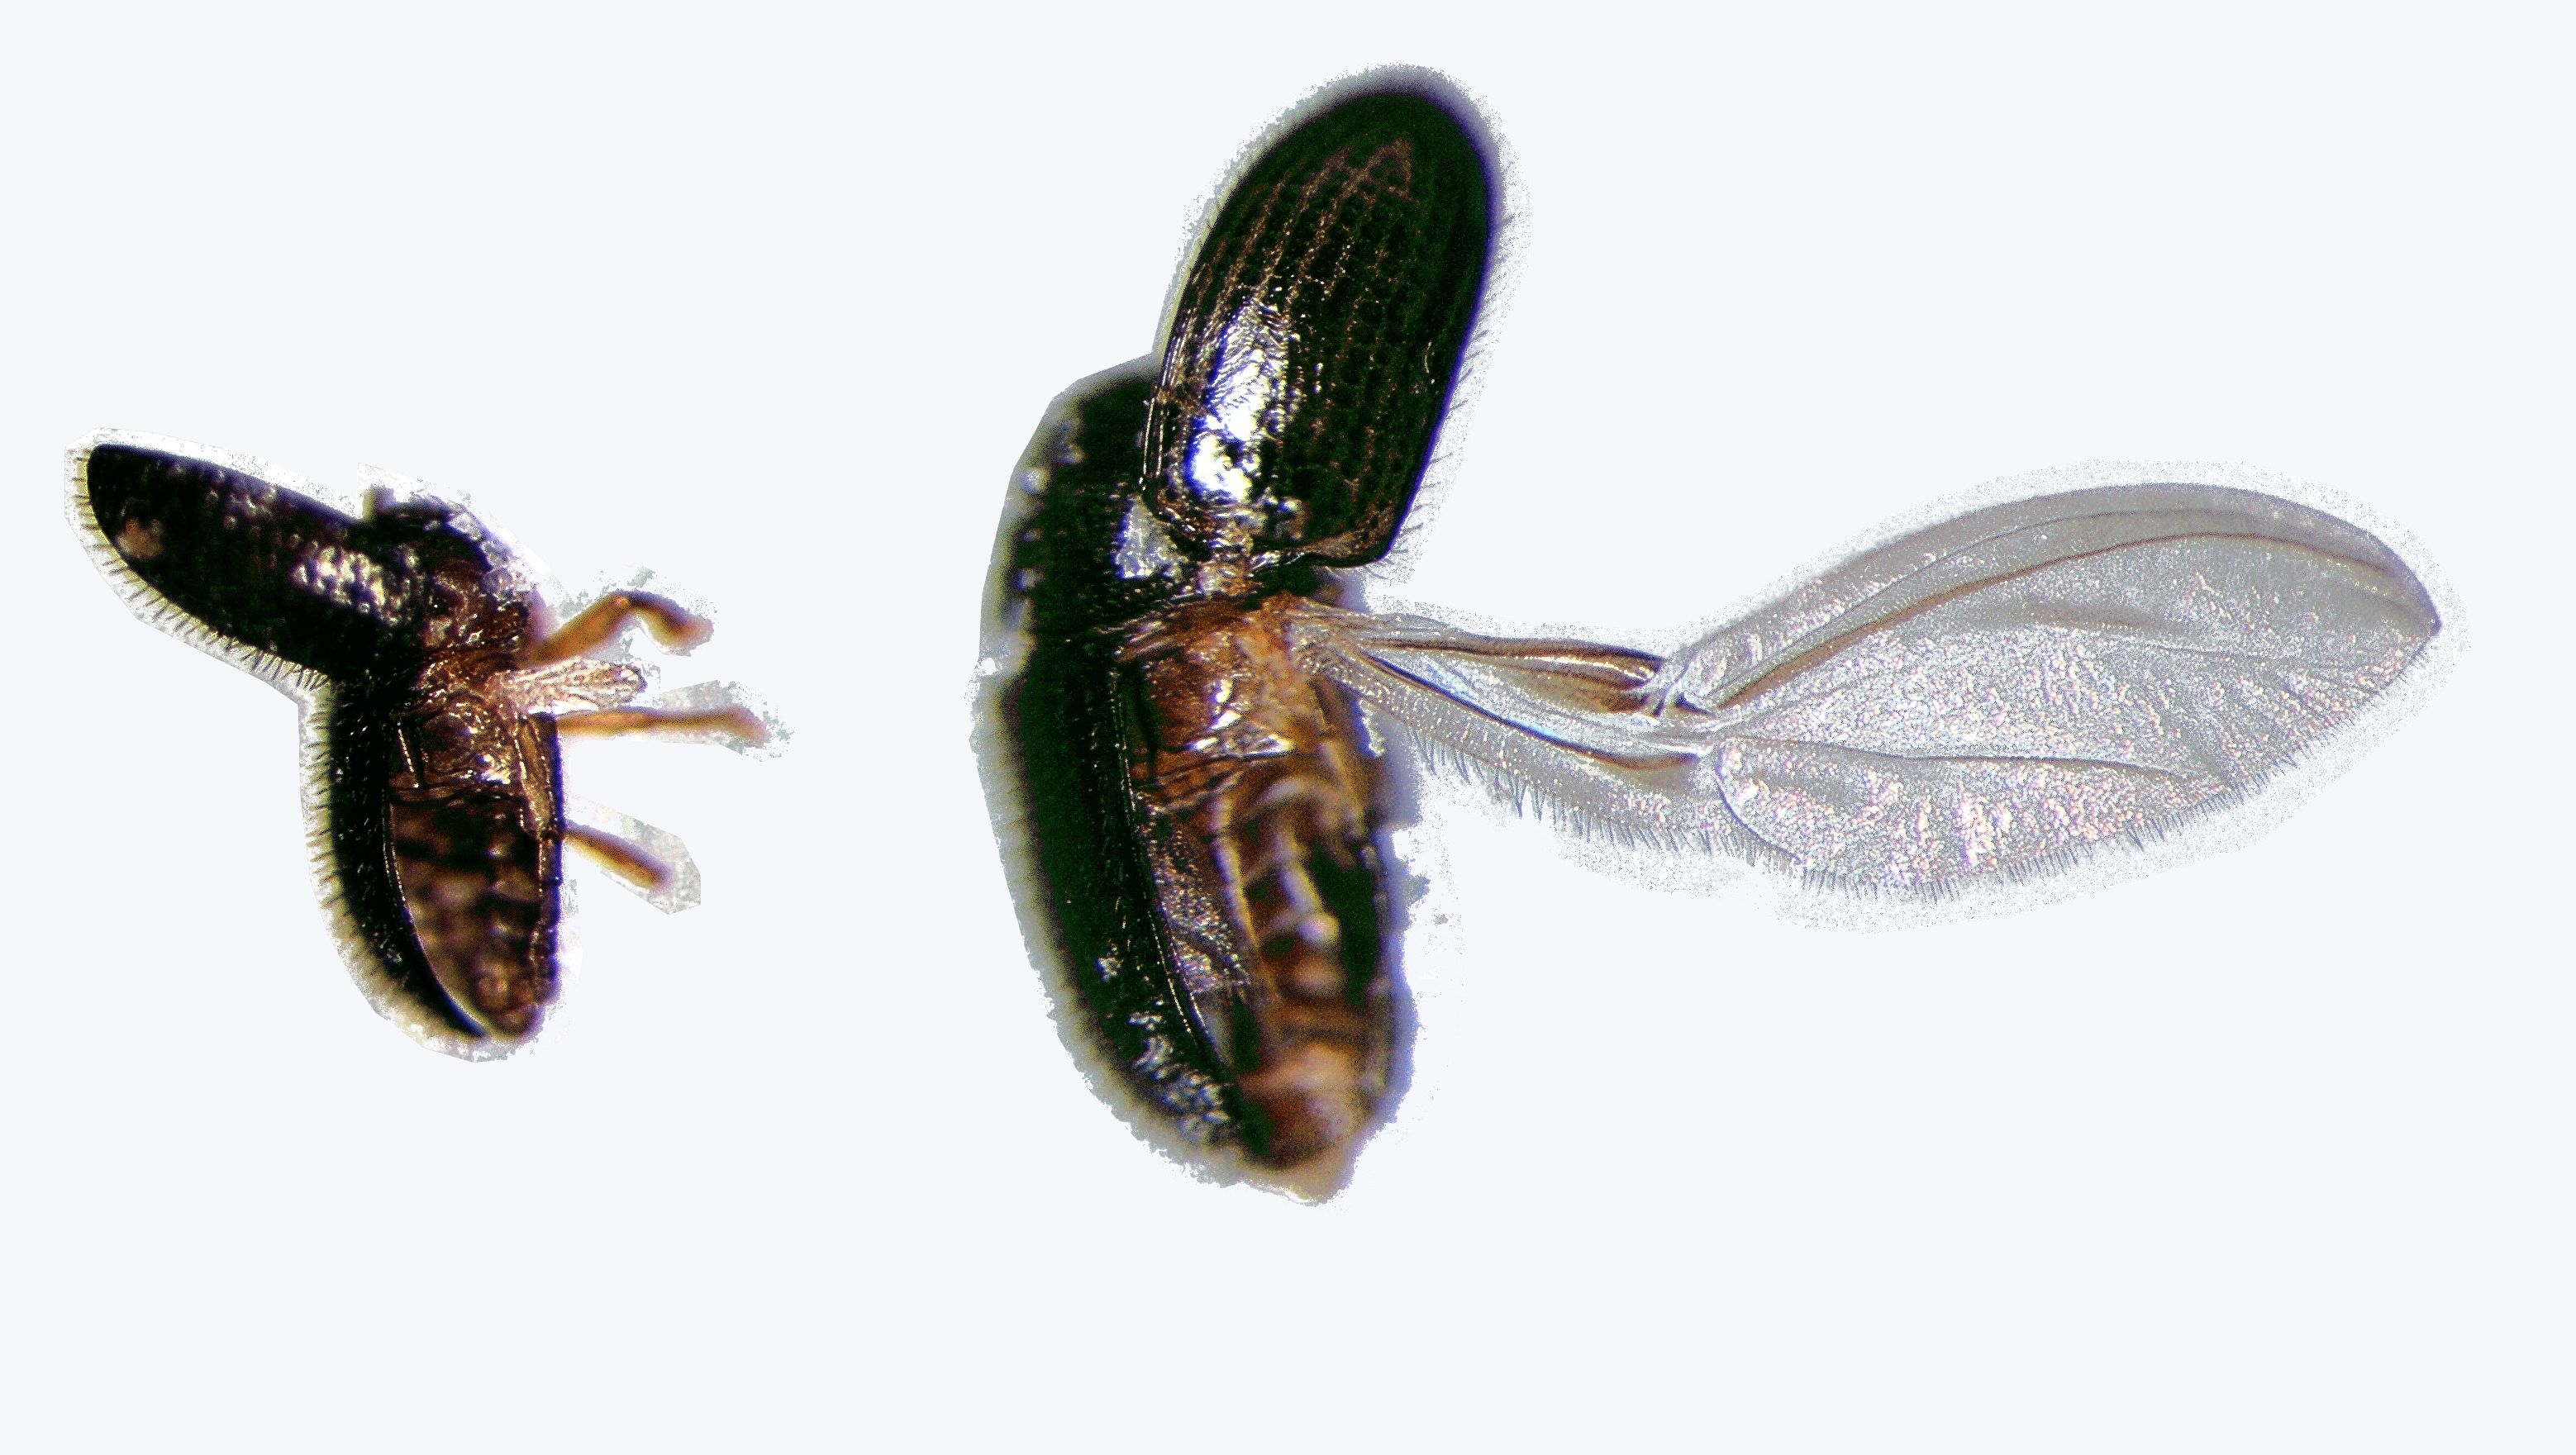 Macho com asas posteriores atrofiadas (esquerda) e fêmea com asas posteriores normais (direita). Foto: Paulo Rebelles Reis